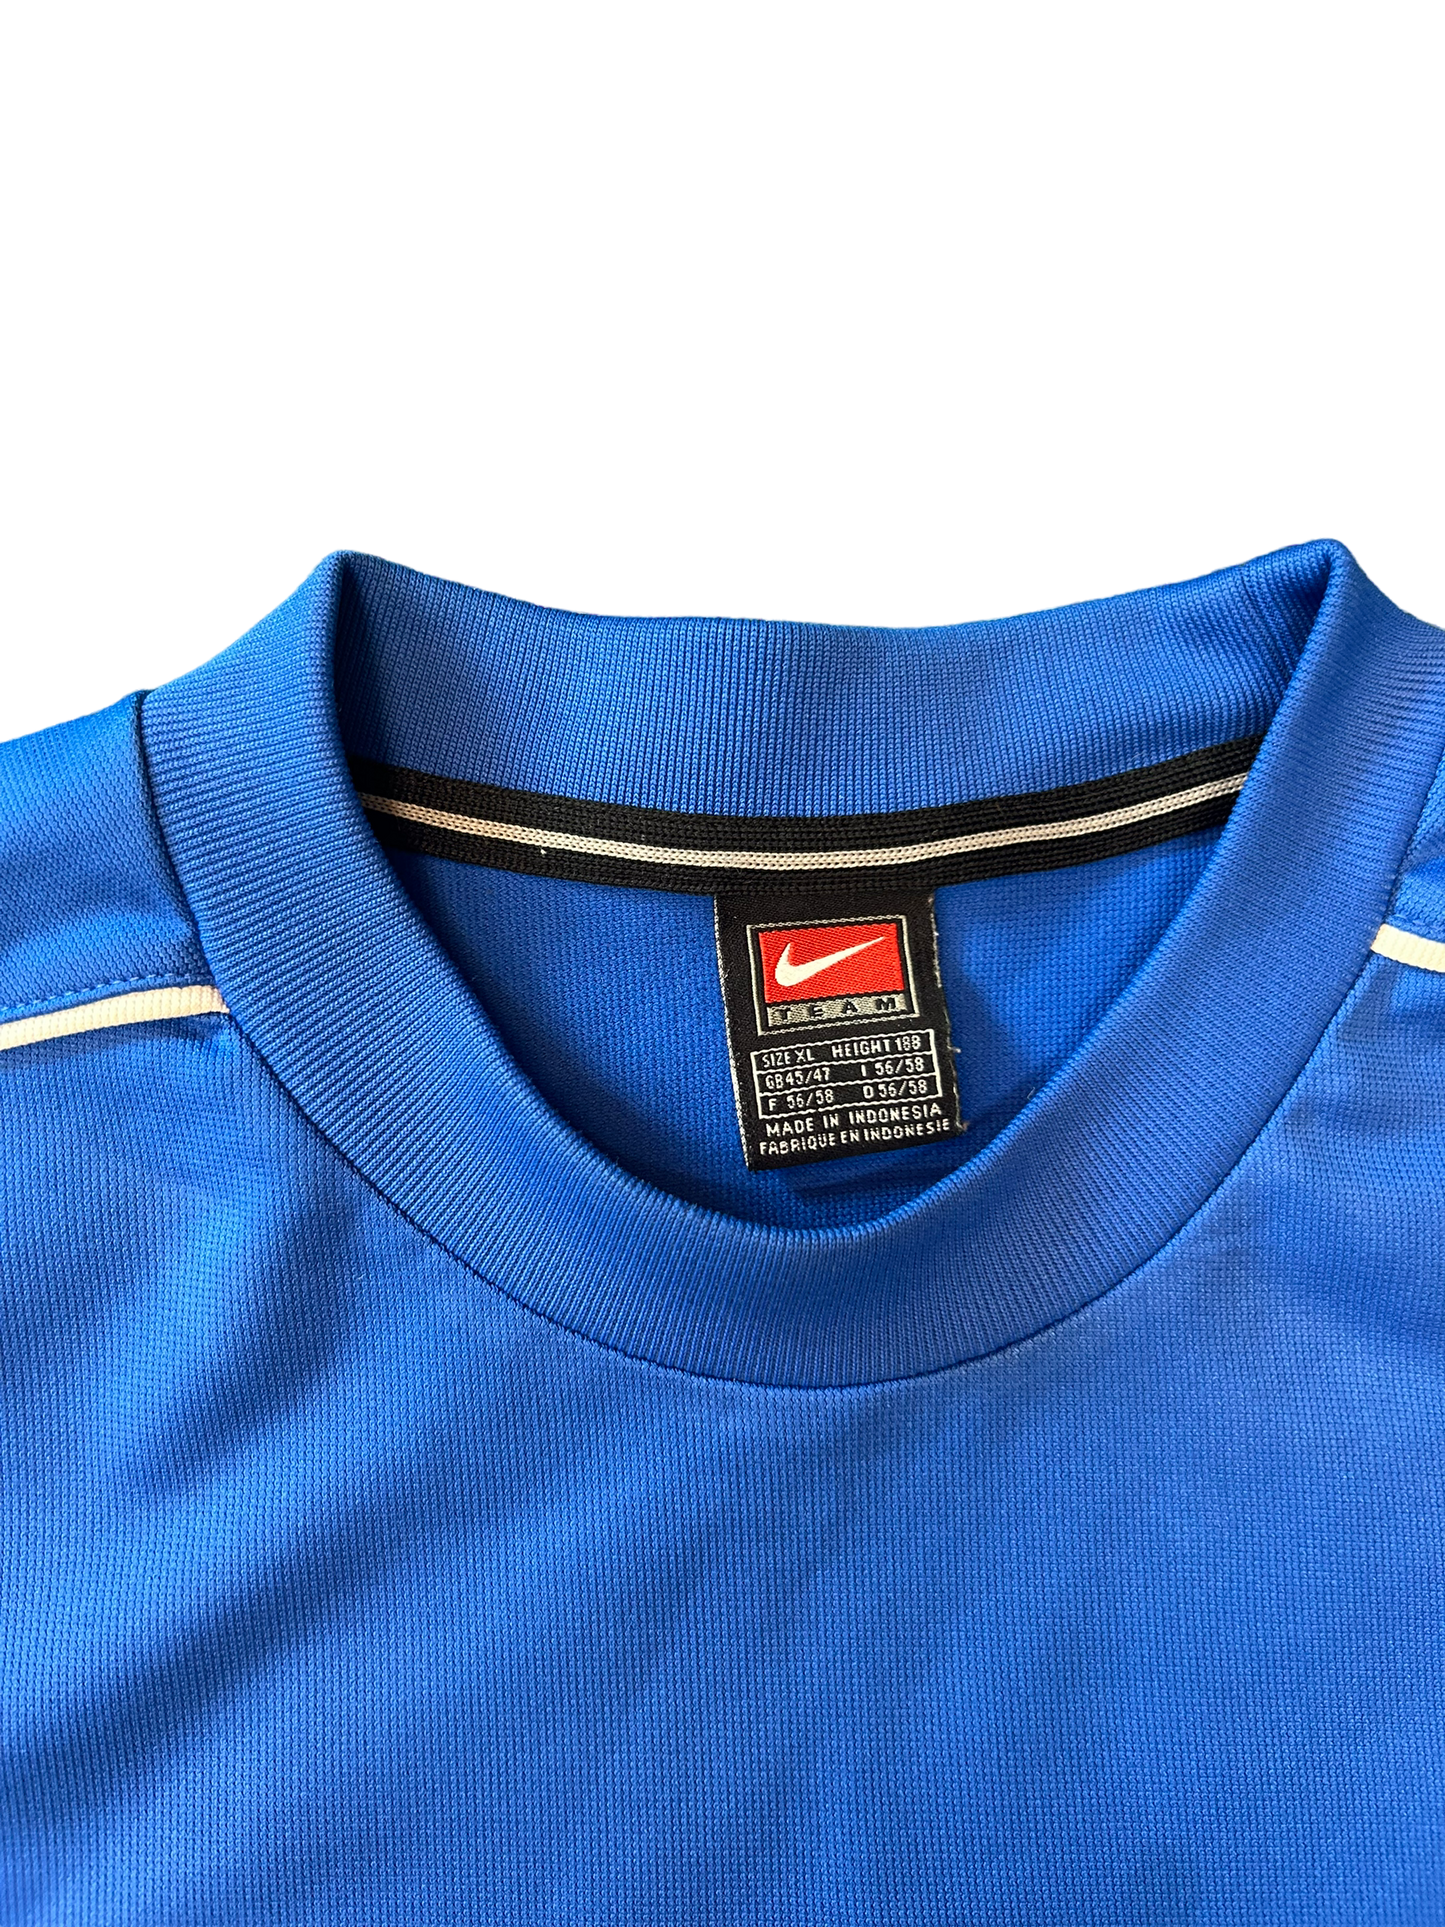 Retro Nike Football Shirt